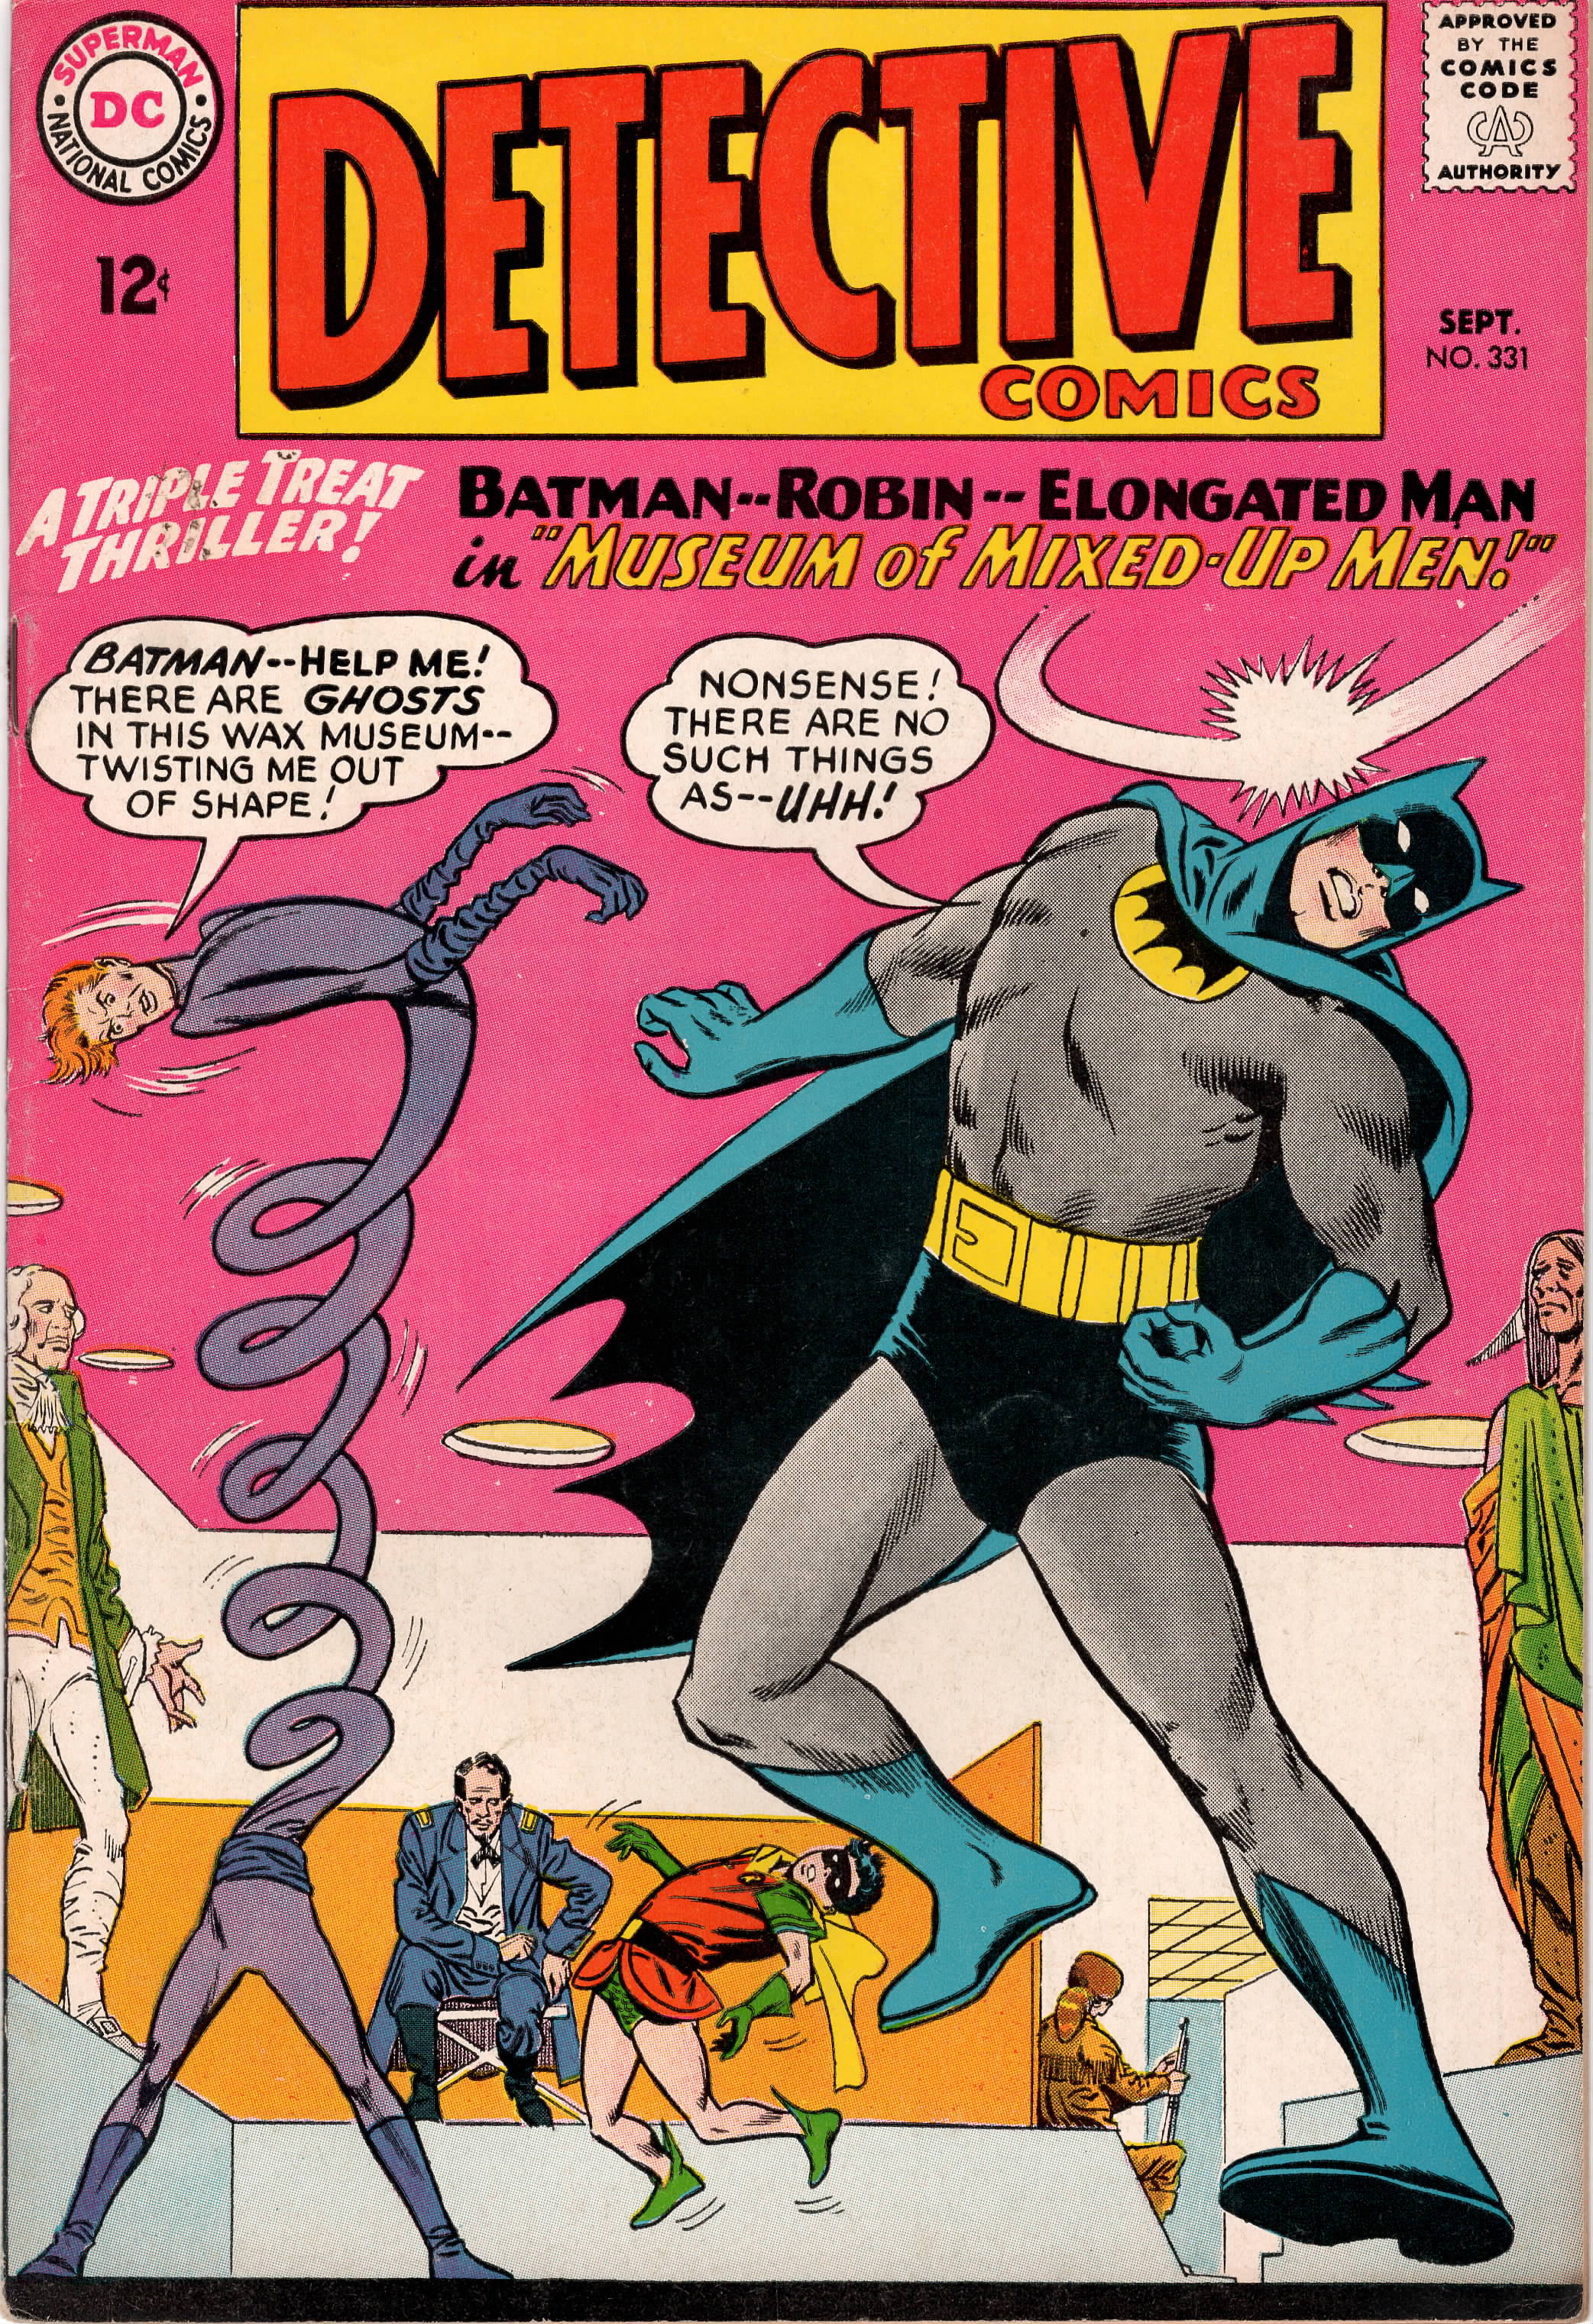 Detective Comics #0331